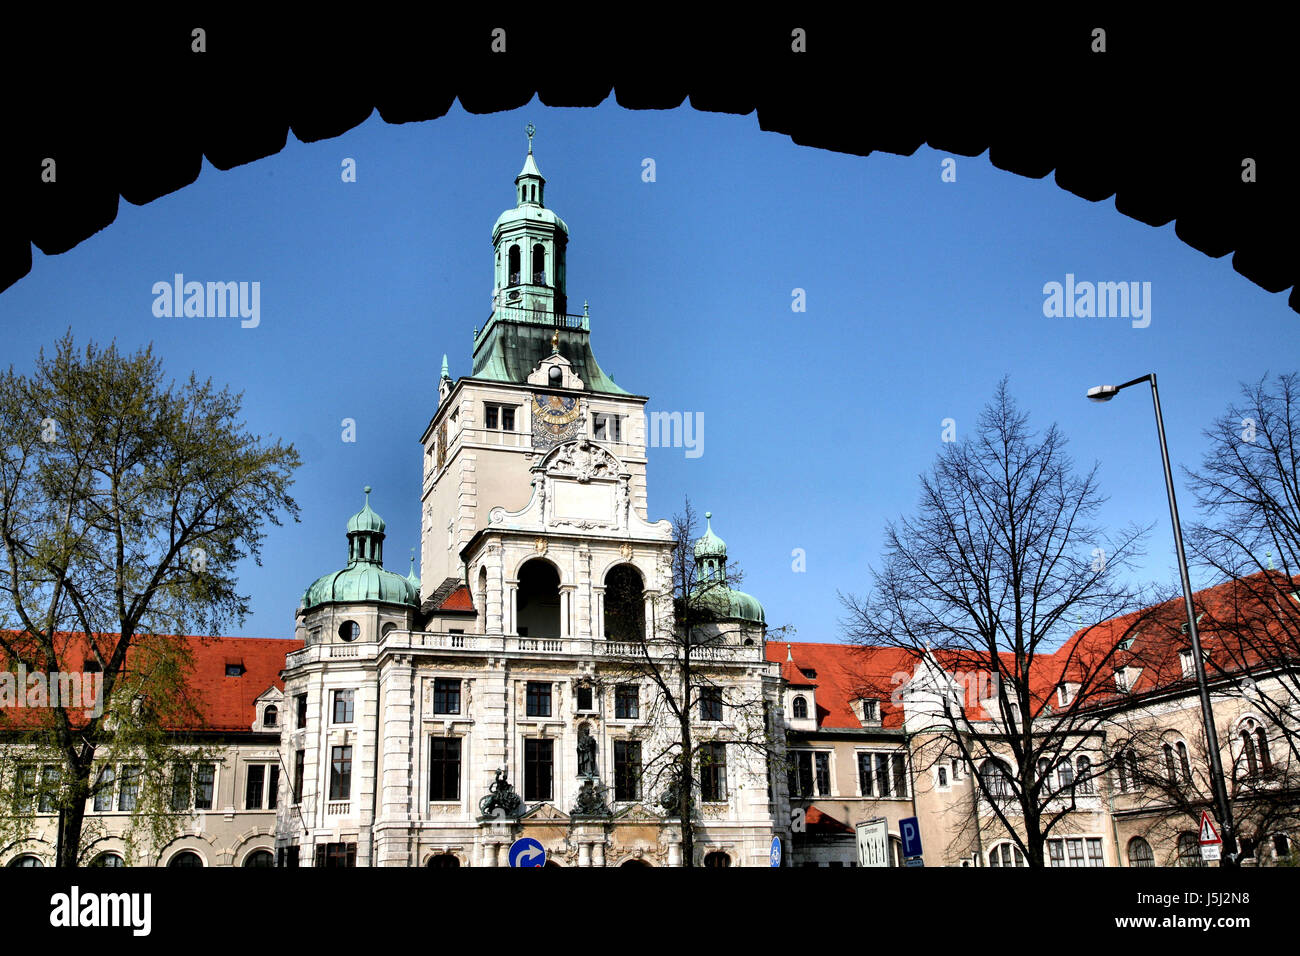 Detalle del arco de la torre admisión Baviera Munich City arcos prinzregentenstrae sun dial Foto de stock